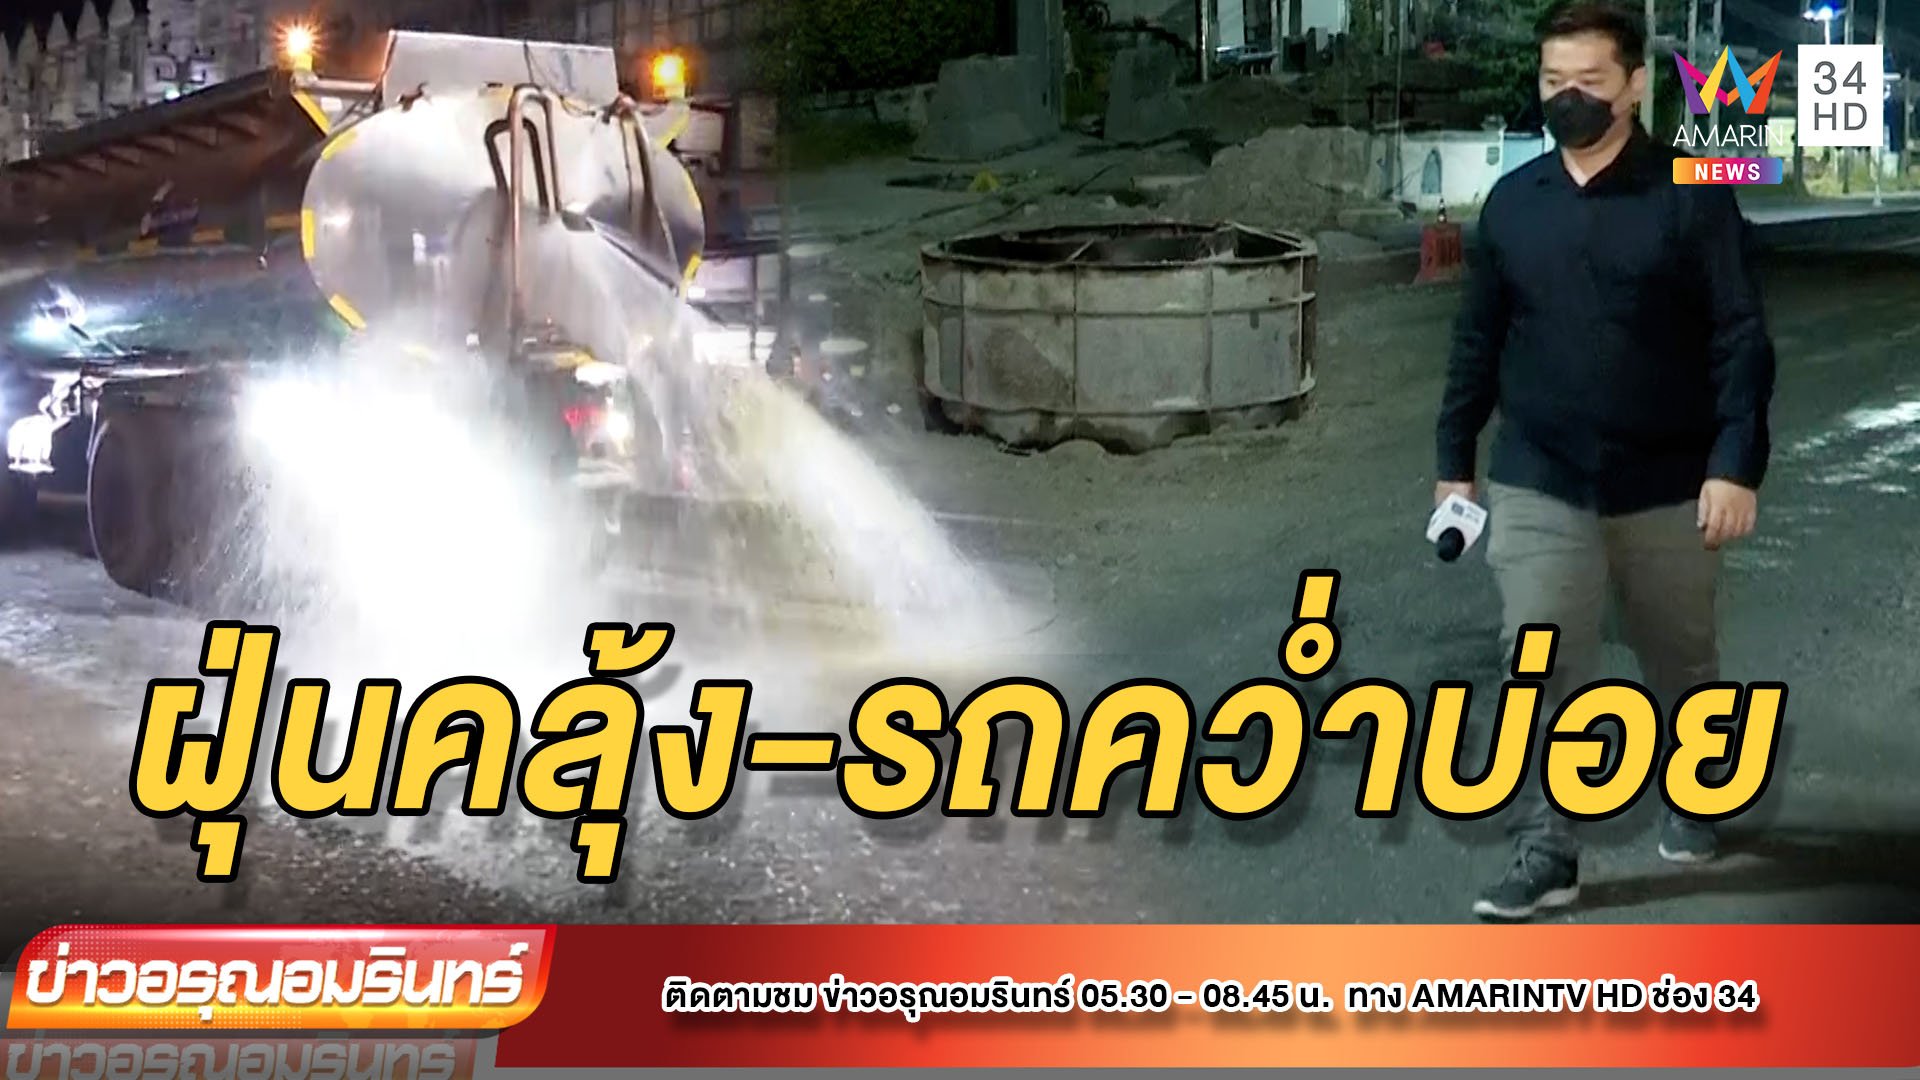 วอนเร่งซ่อมถนนแพรกษา ฝุ่นคลุ้ง-มีอุบัติเหตุถี่ | ข่าวอรุณอมรินทร์ | 16 ธ.ค. 64 | AMARIN TVHD34